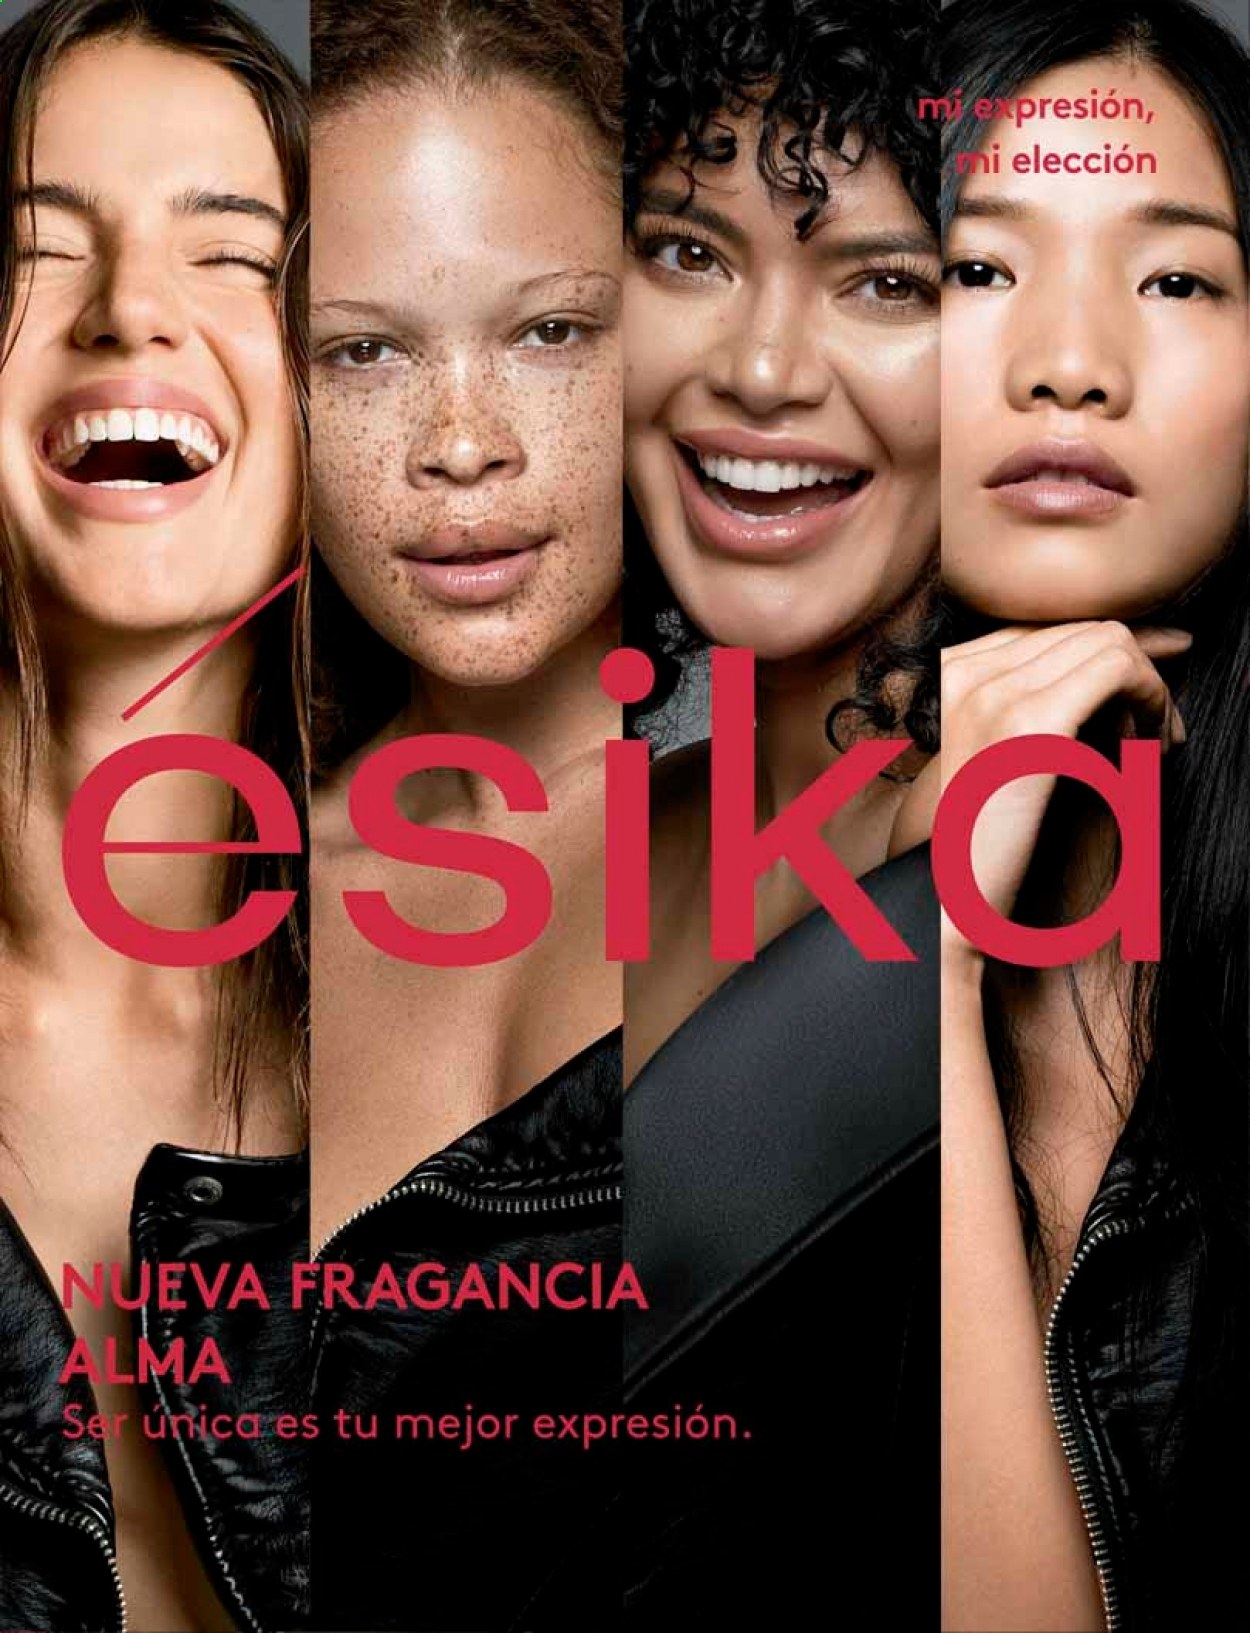 Catálogo Ésika.